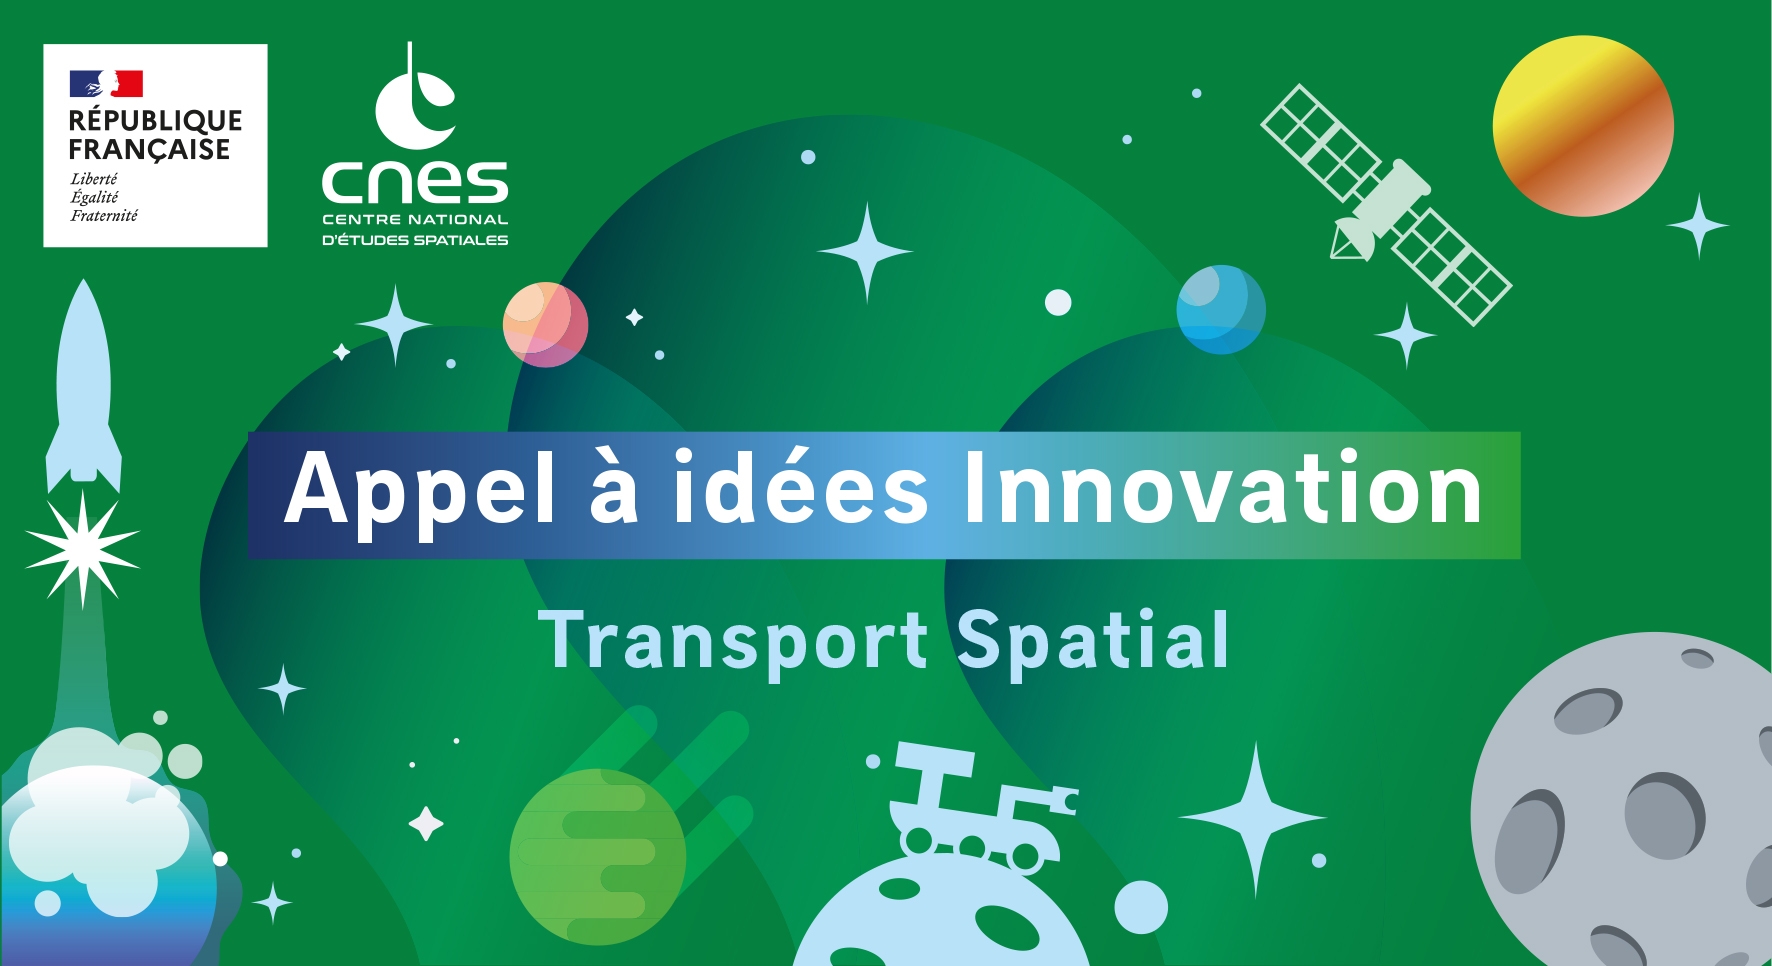 ep_appel-idees-innovation-transport-spatial-2022.jpg